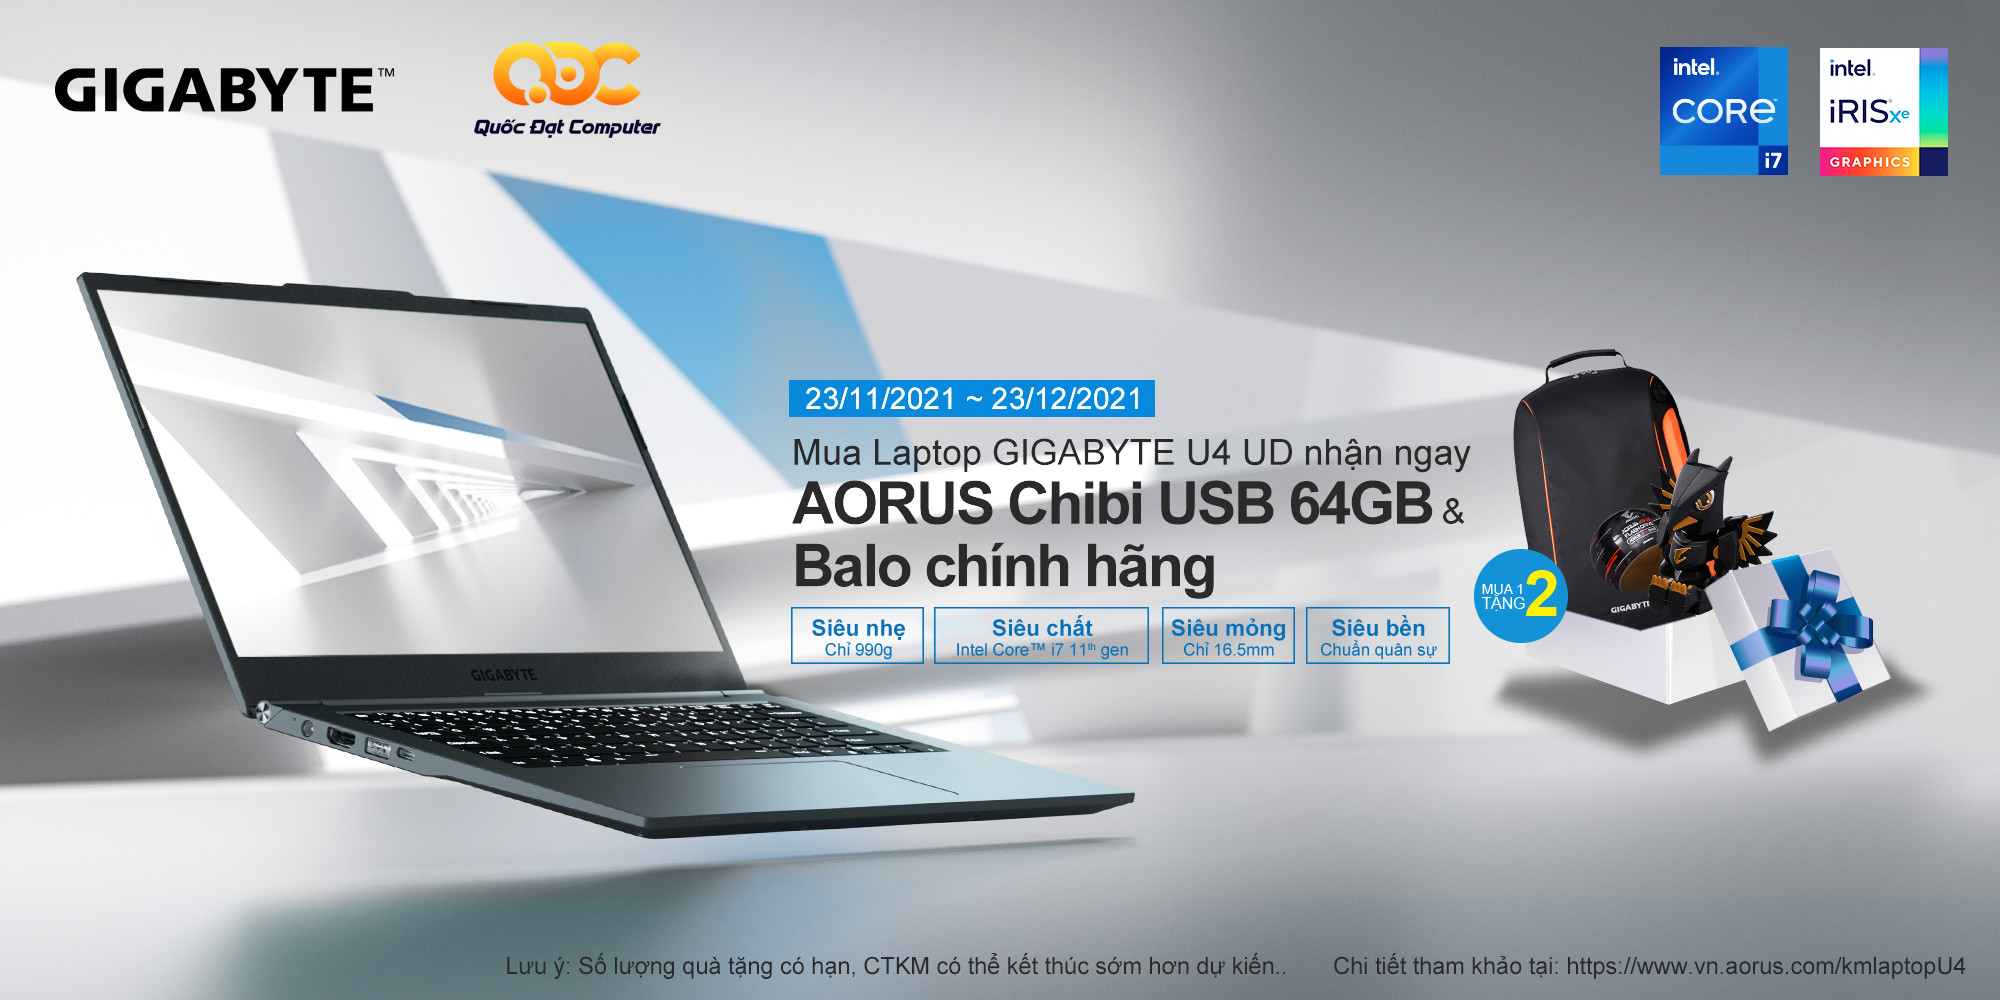 Mua Laptop GIGABYTE U4 UD Nhận Ngay AORUS Chibi USB 64GB & Balo Chính Hãng